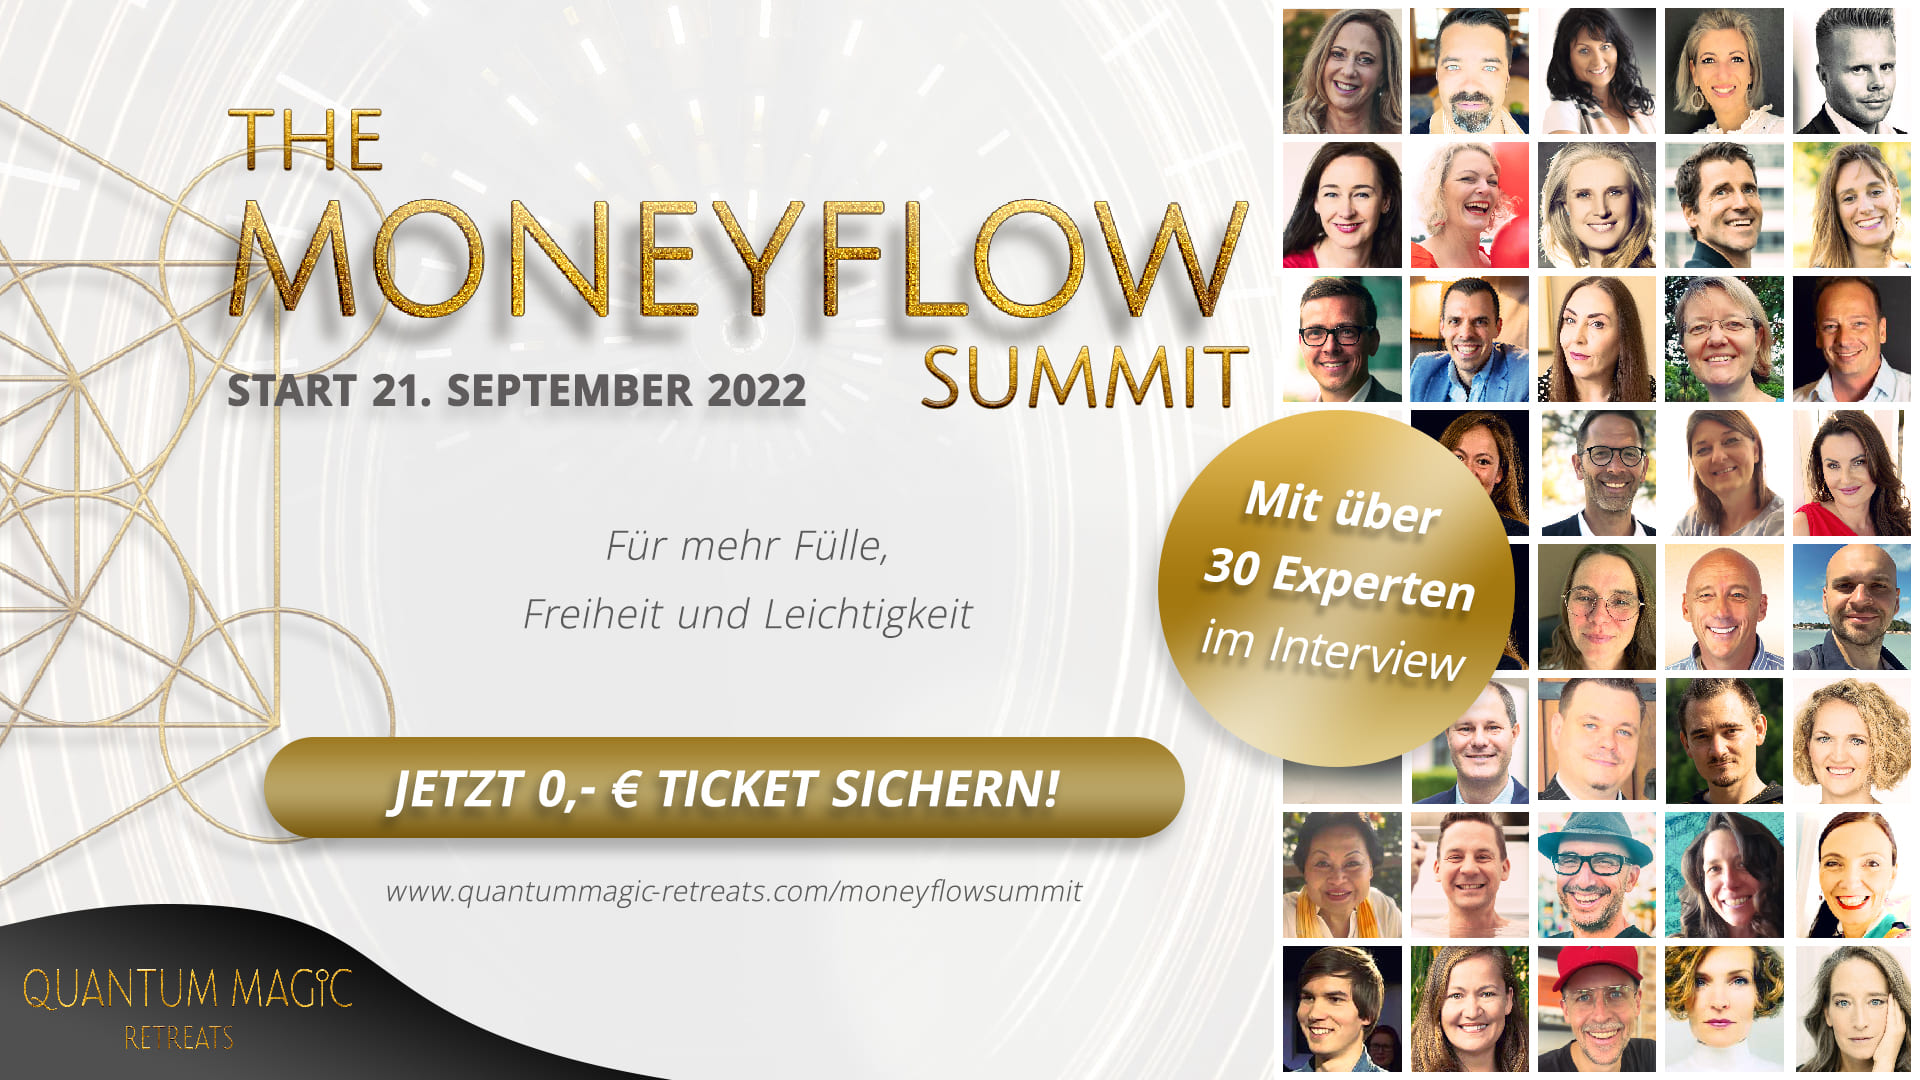 The MONEYFLOW Summit 2022